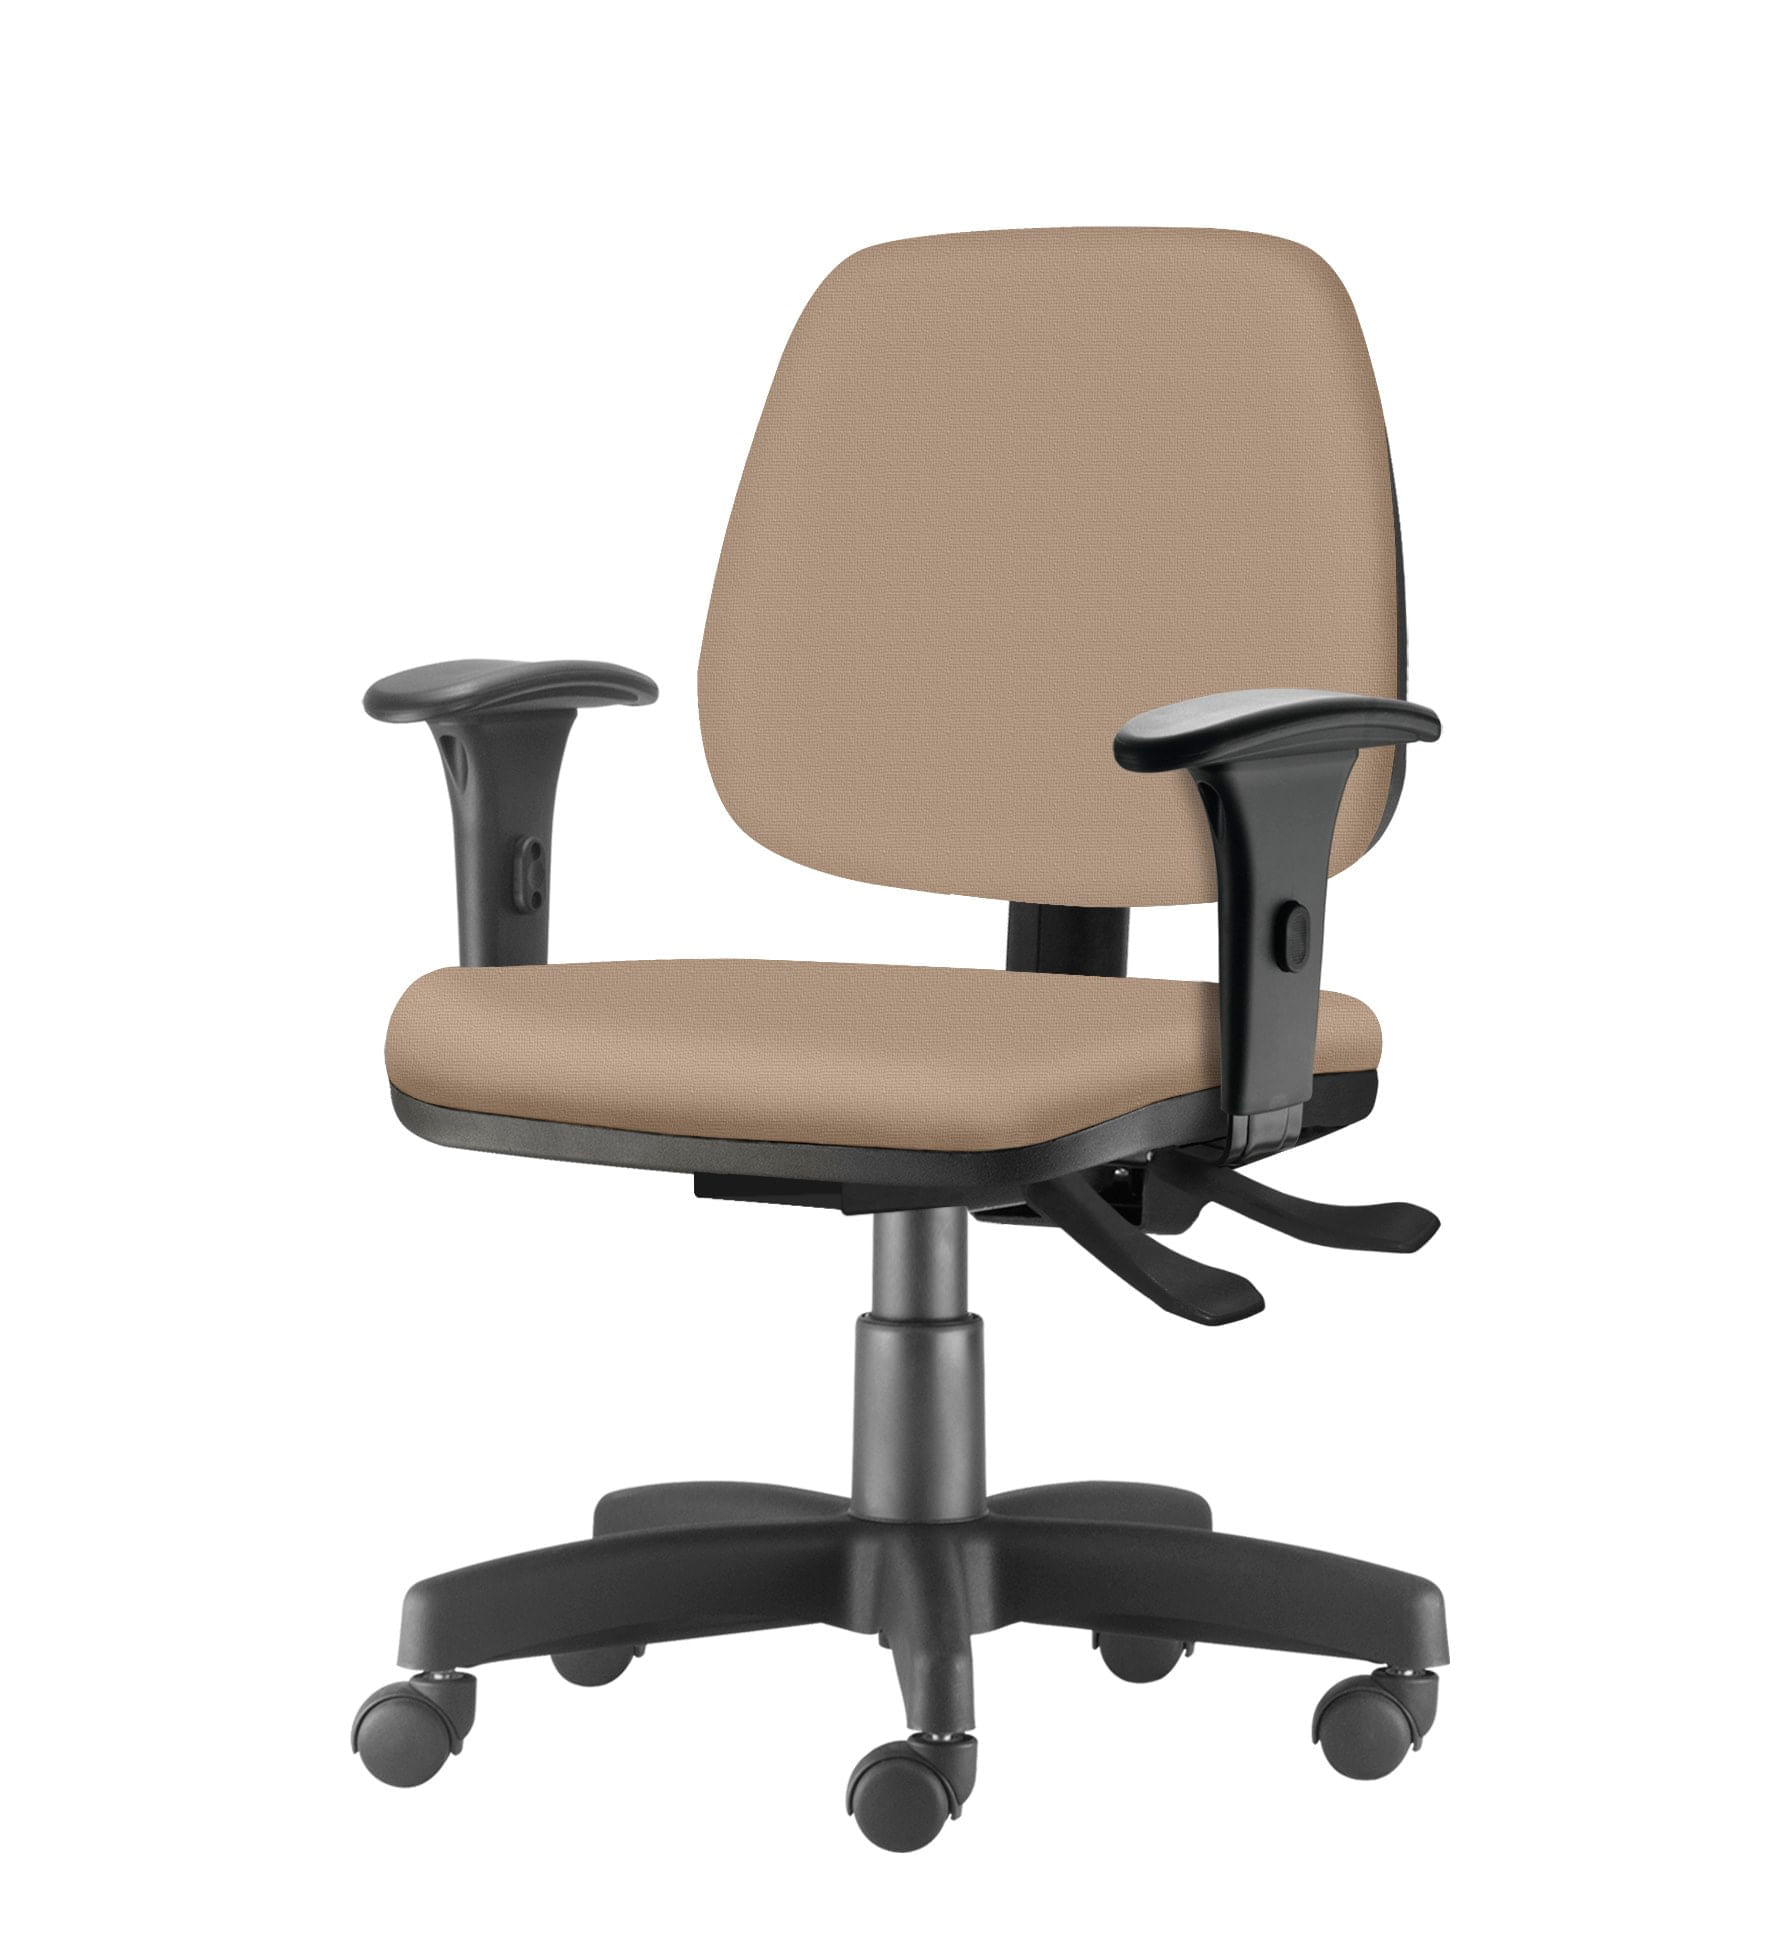 Cadeira Job com Bracos Assento Crepe Bege Base Rodizio Metalico Preto - 54600